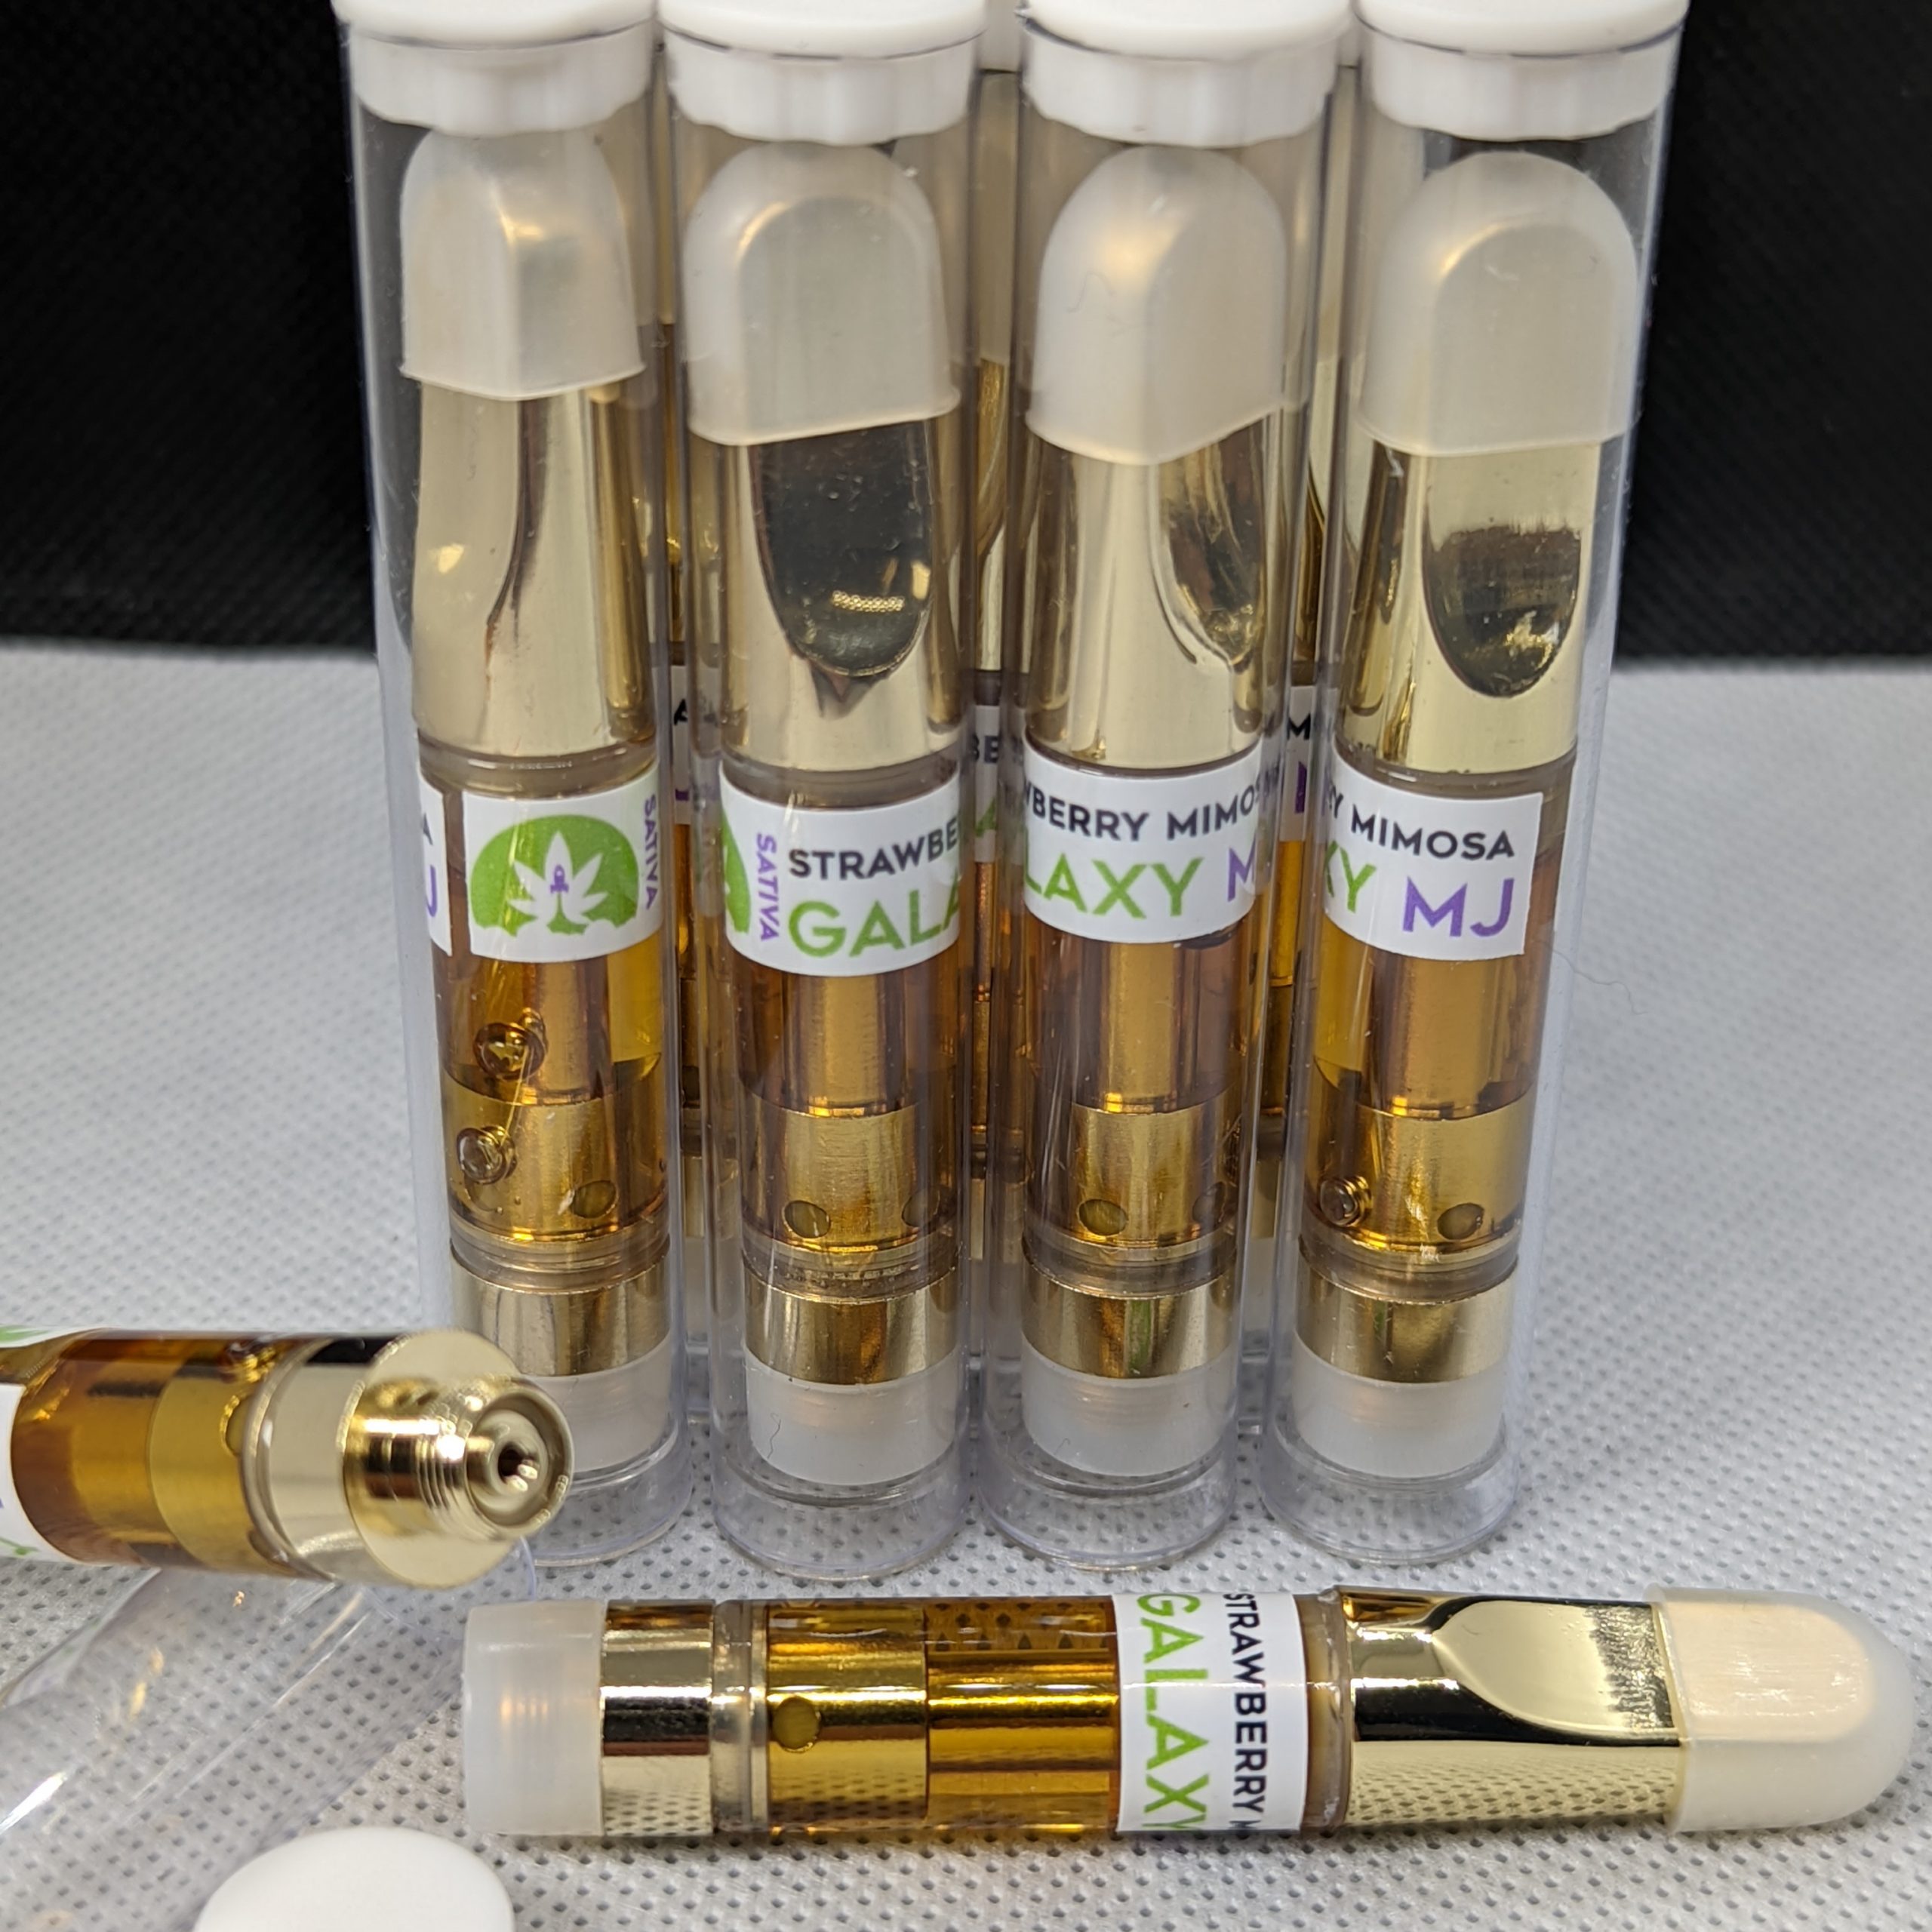 Brass Knuckles 900 maH Vape Pen – Gold – Uplift Cannabis – The